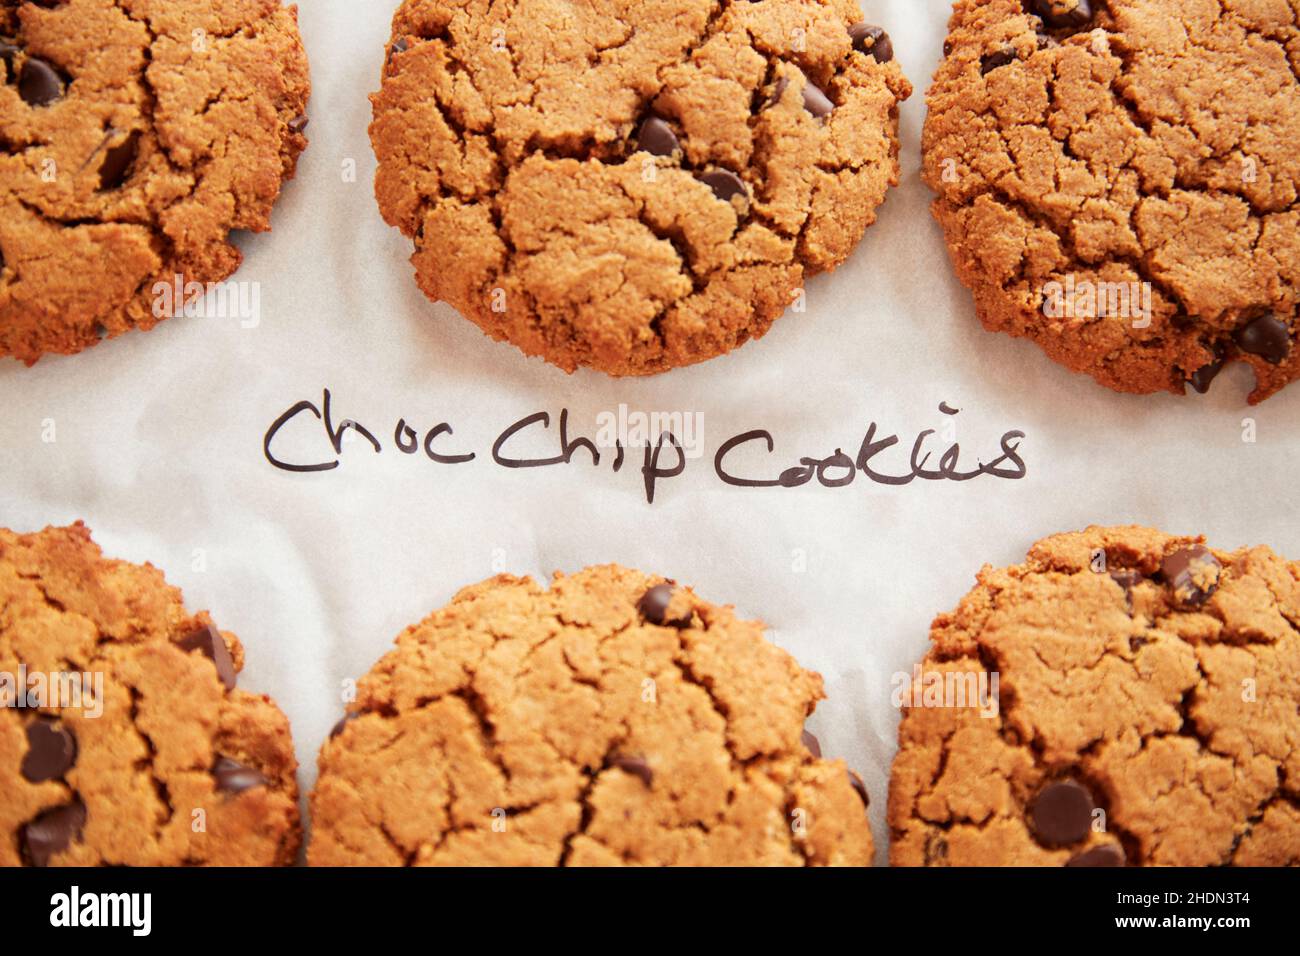 biscotti, biscotti al cioccolato, biscotti con chip di cioccolato, biscotti, biscotti al cioccolato Foto Stock